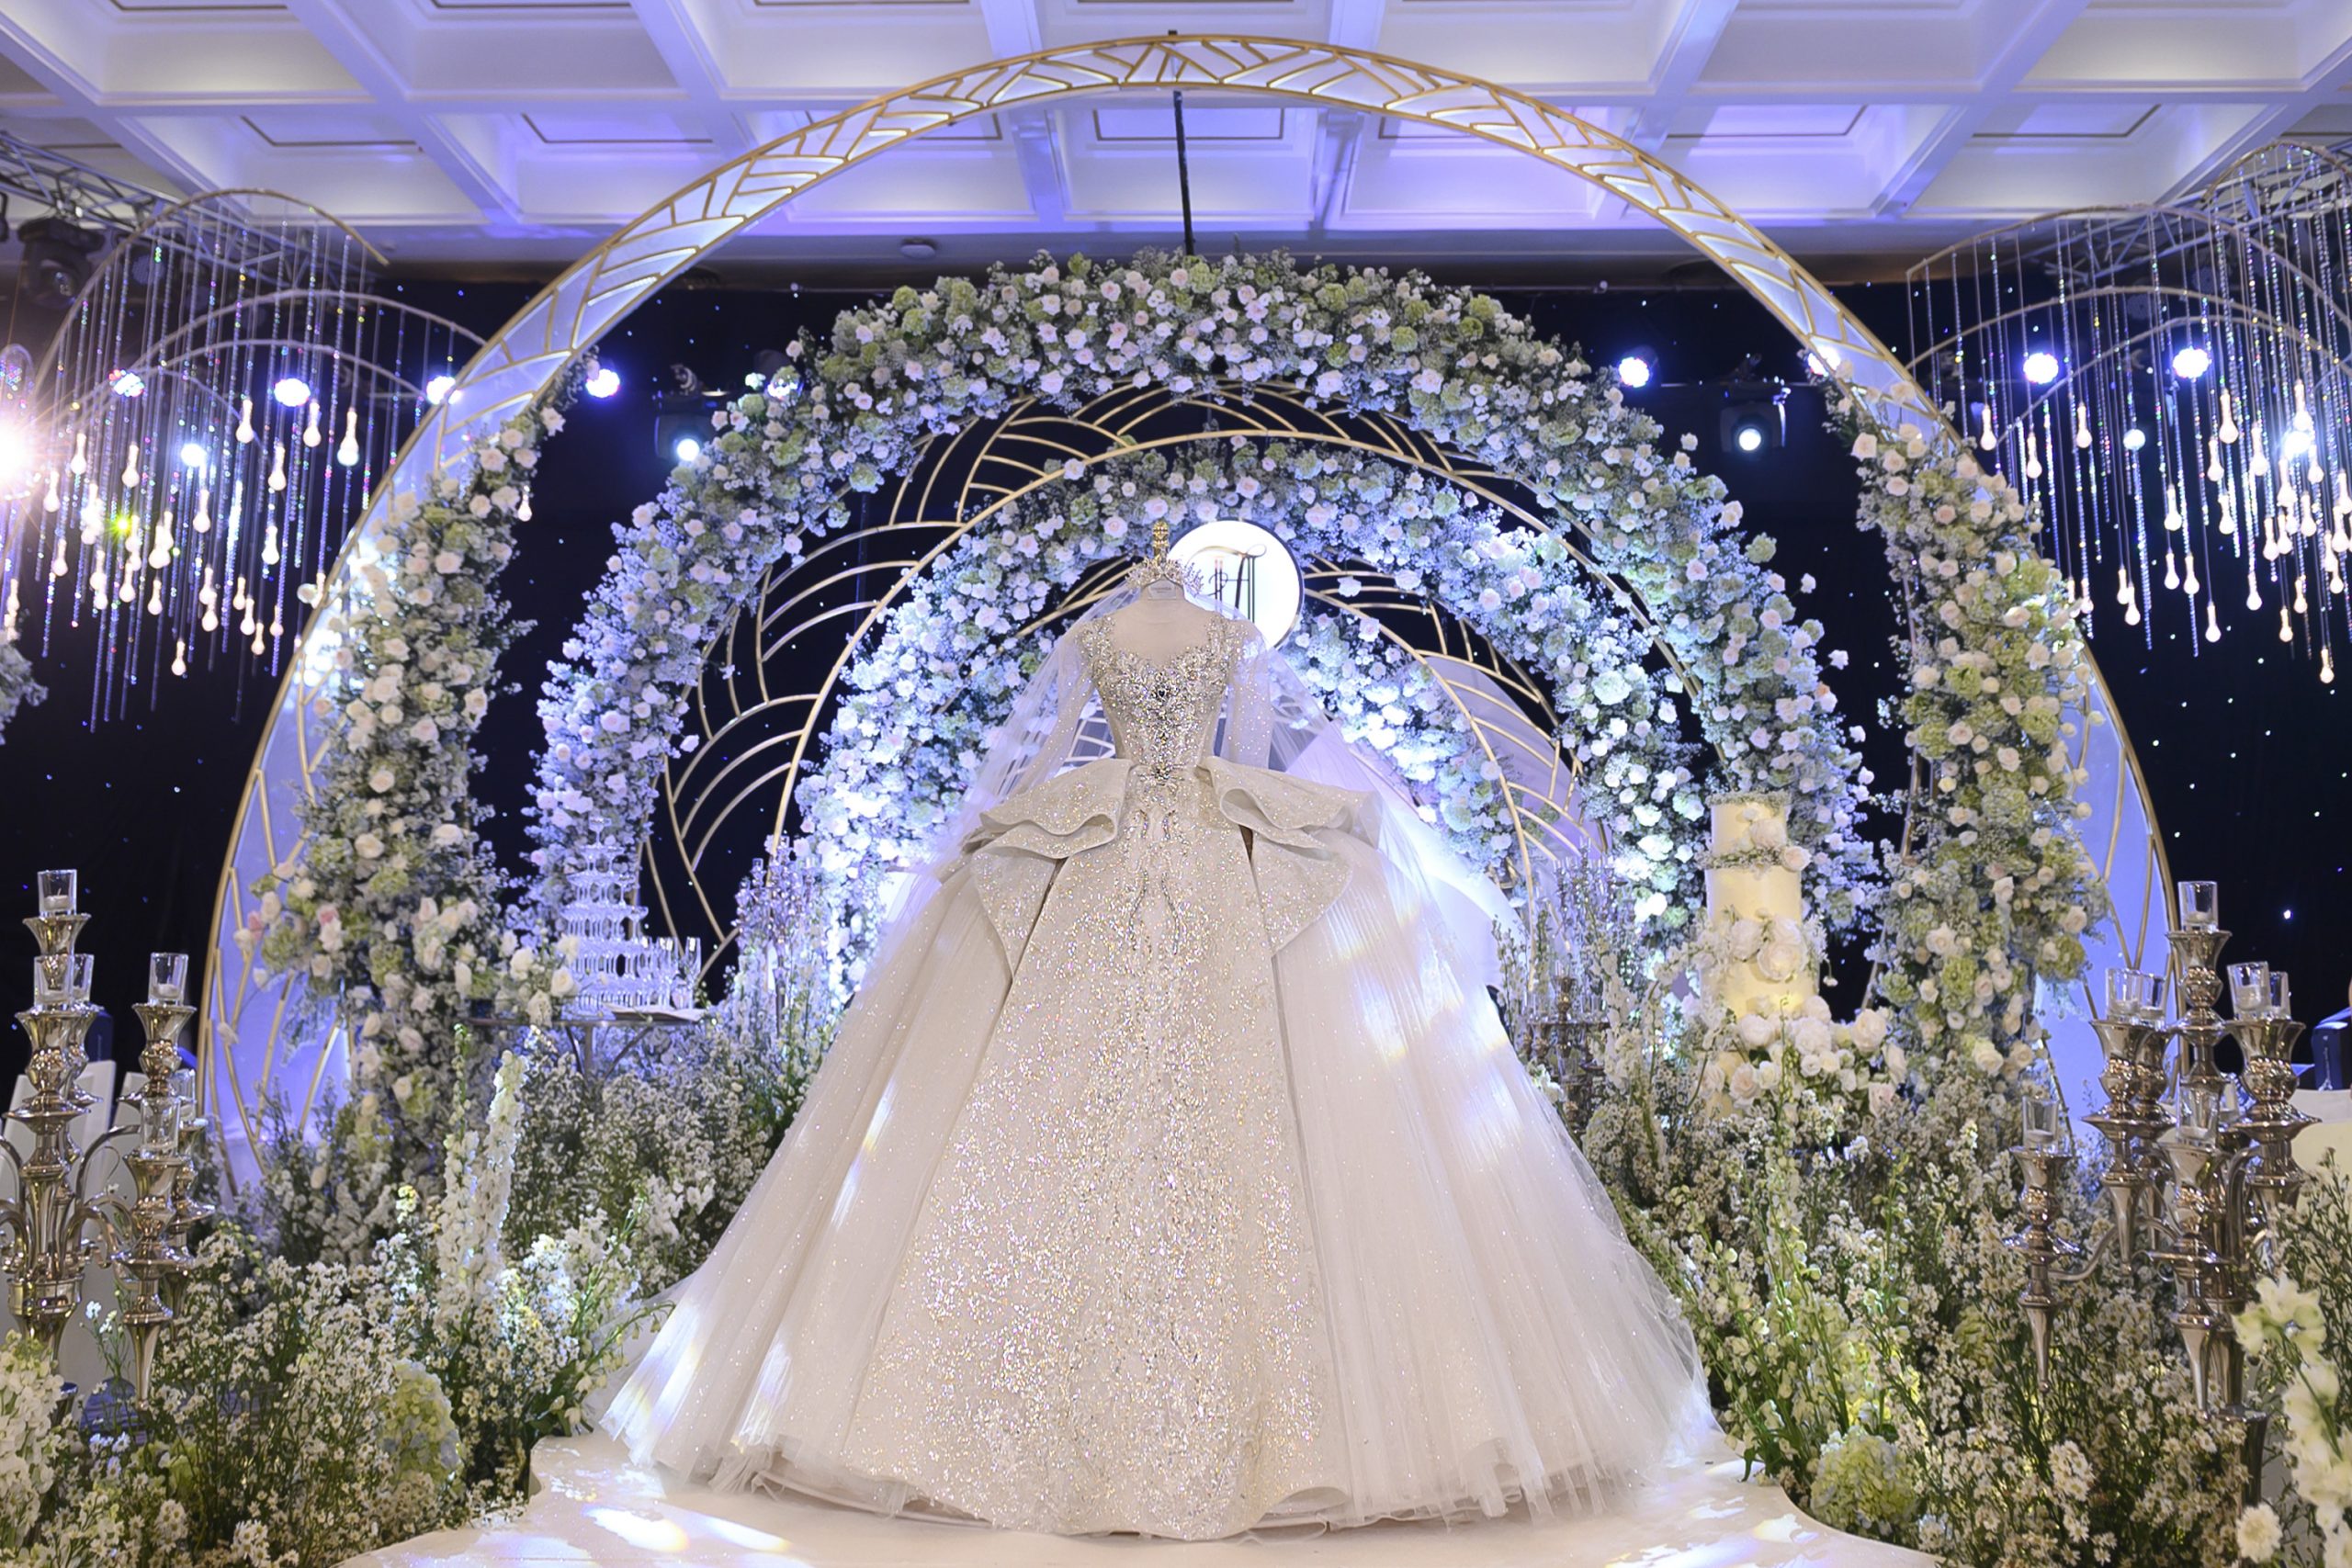 Váy Cưới Xoài Non là chiếc váy cưới lộng lẫy được chính tay Nhà thiết kế Linh Nga thực hiện